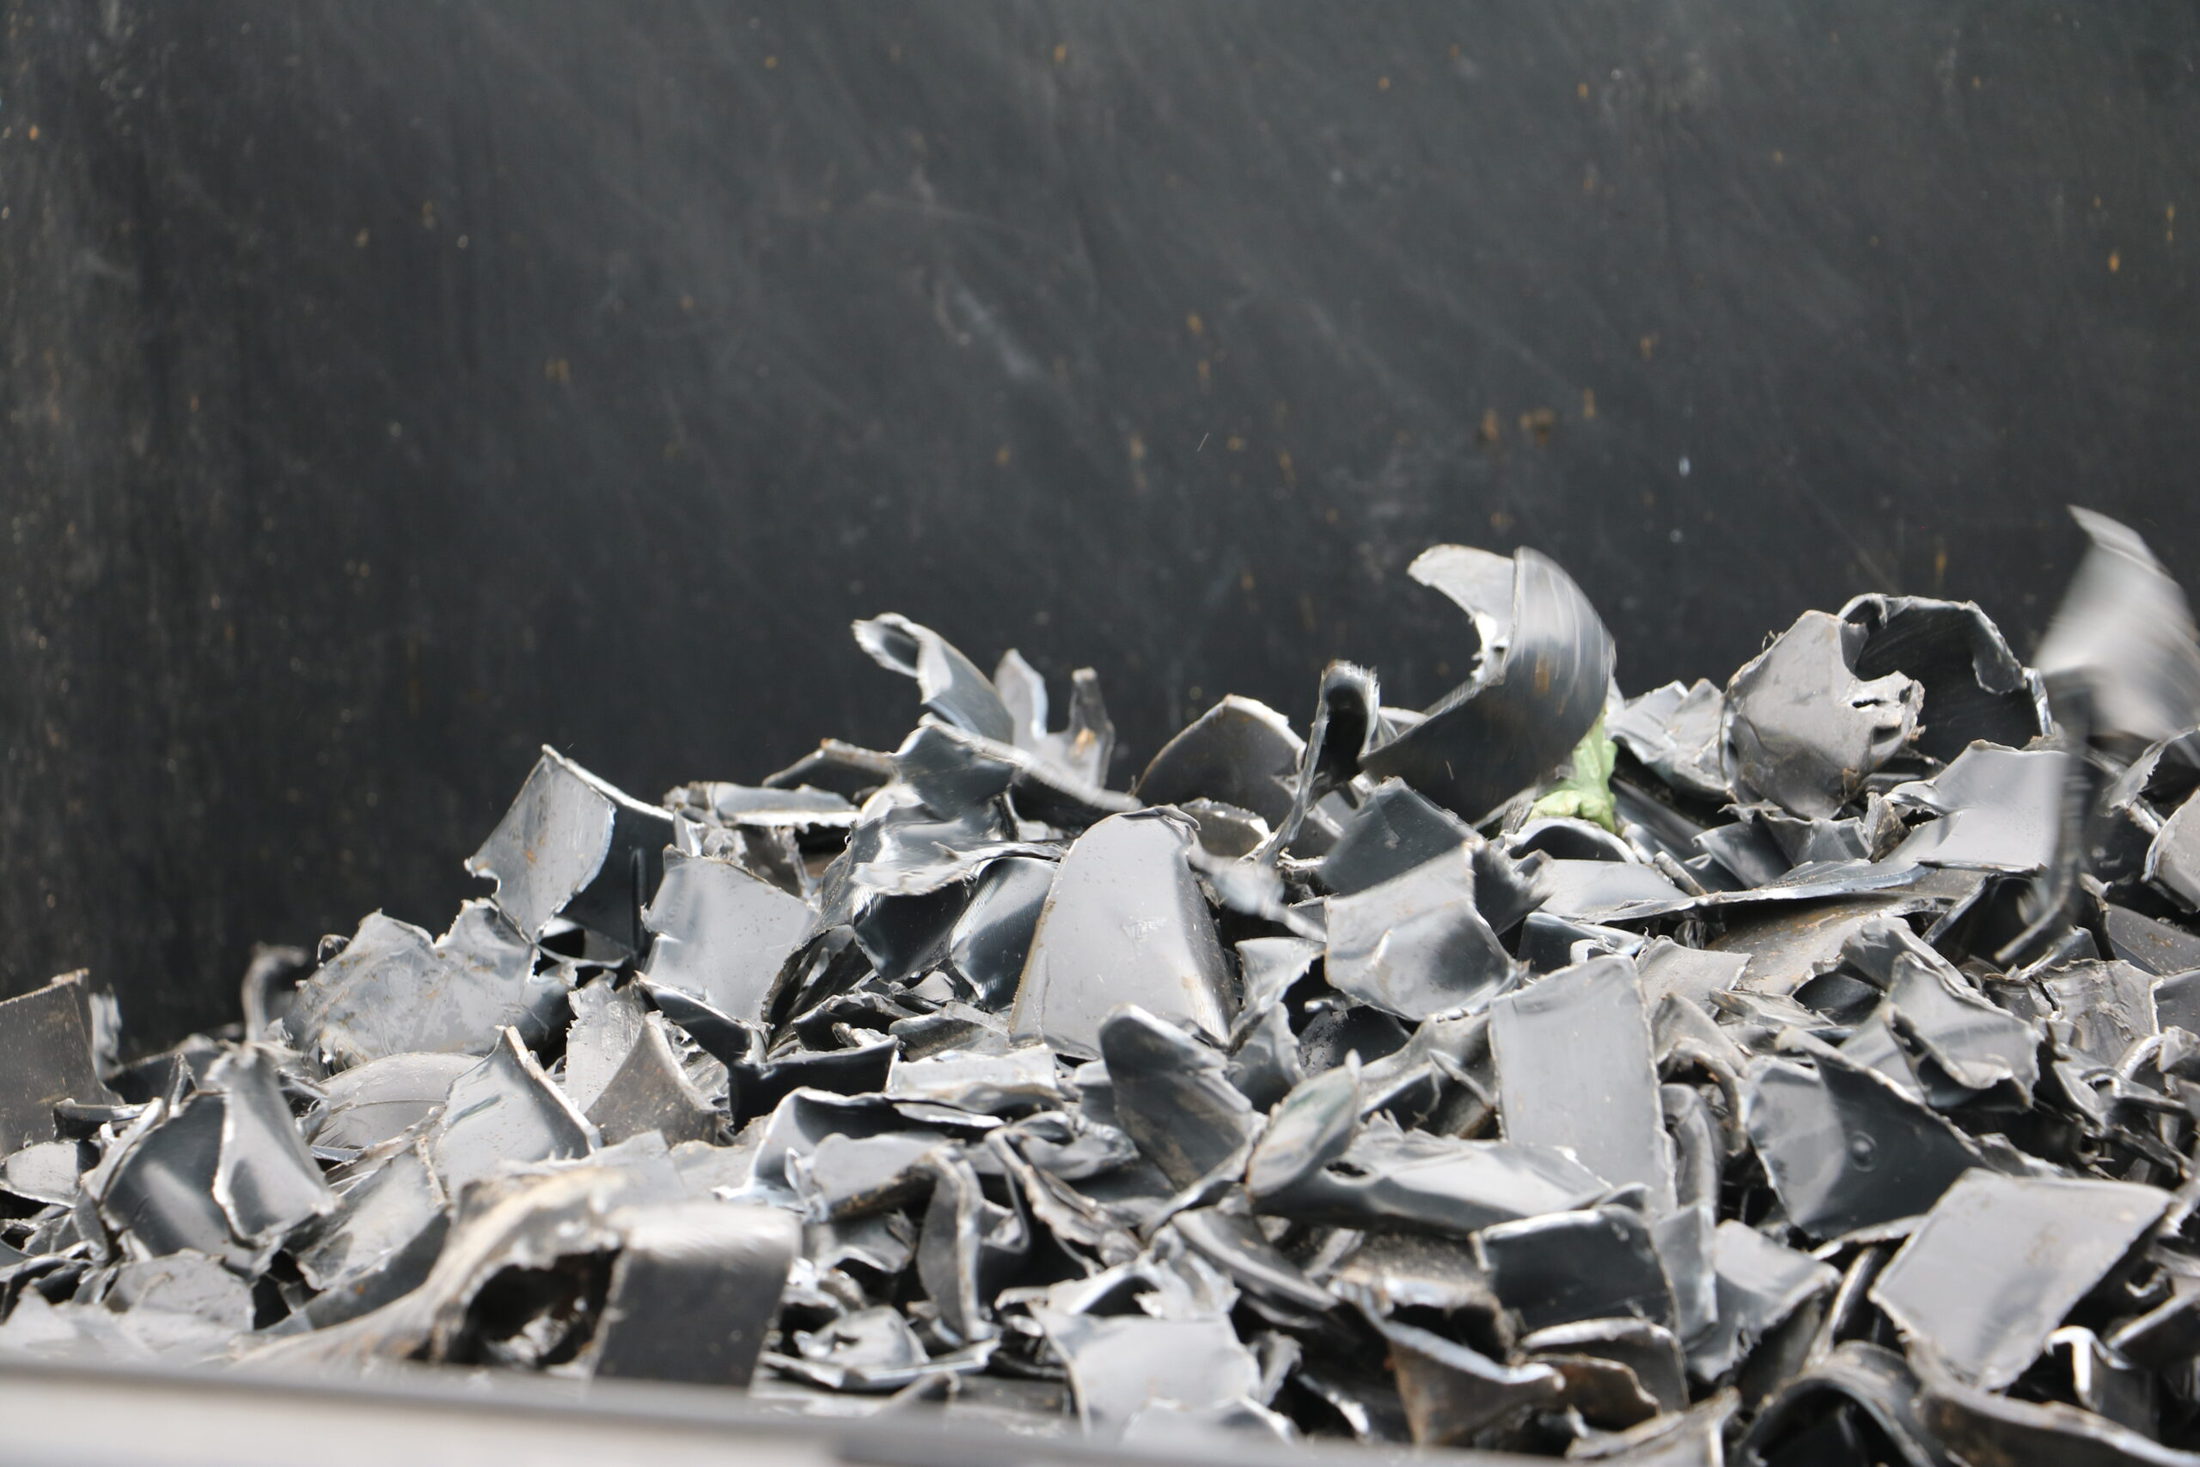 joca recycling shredder